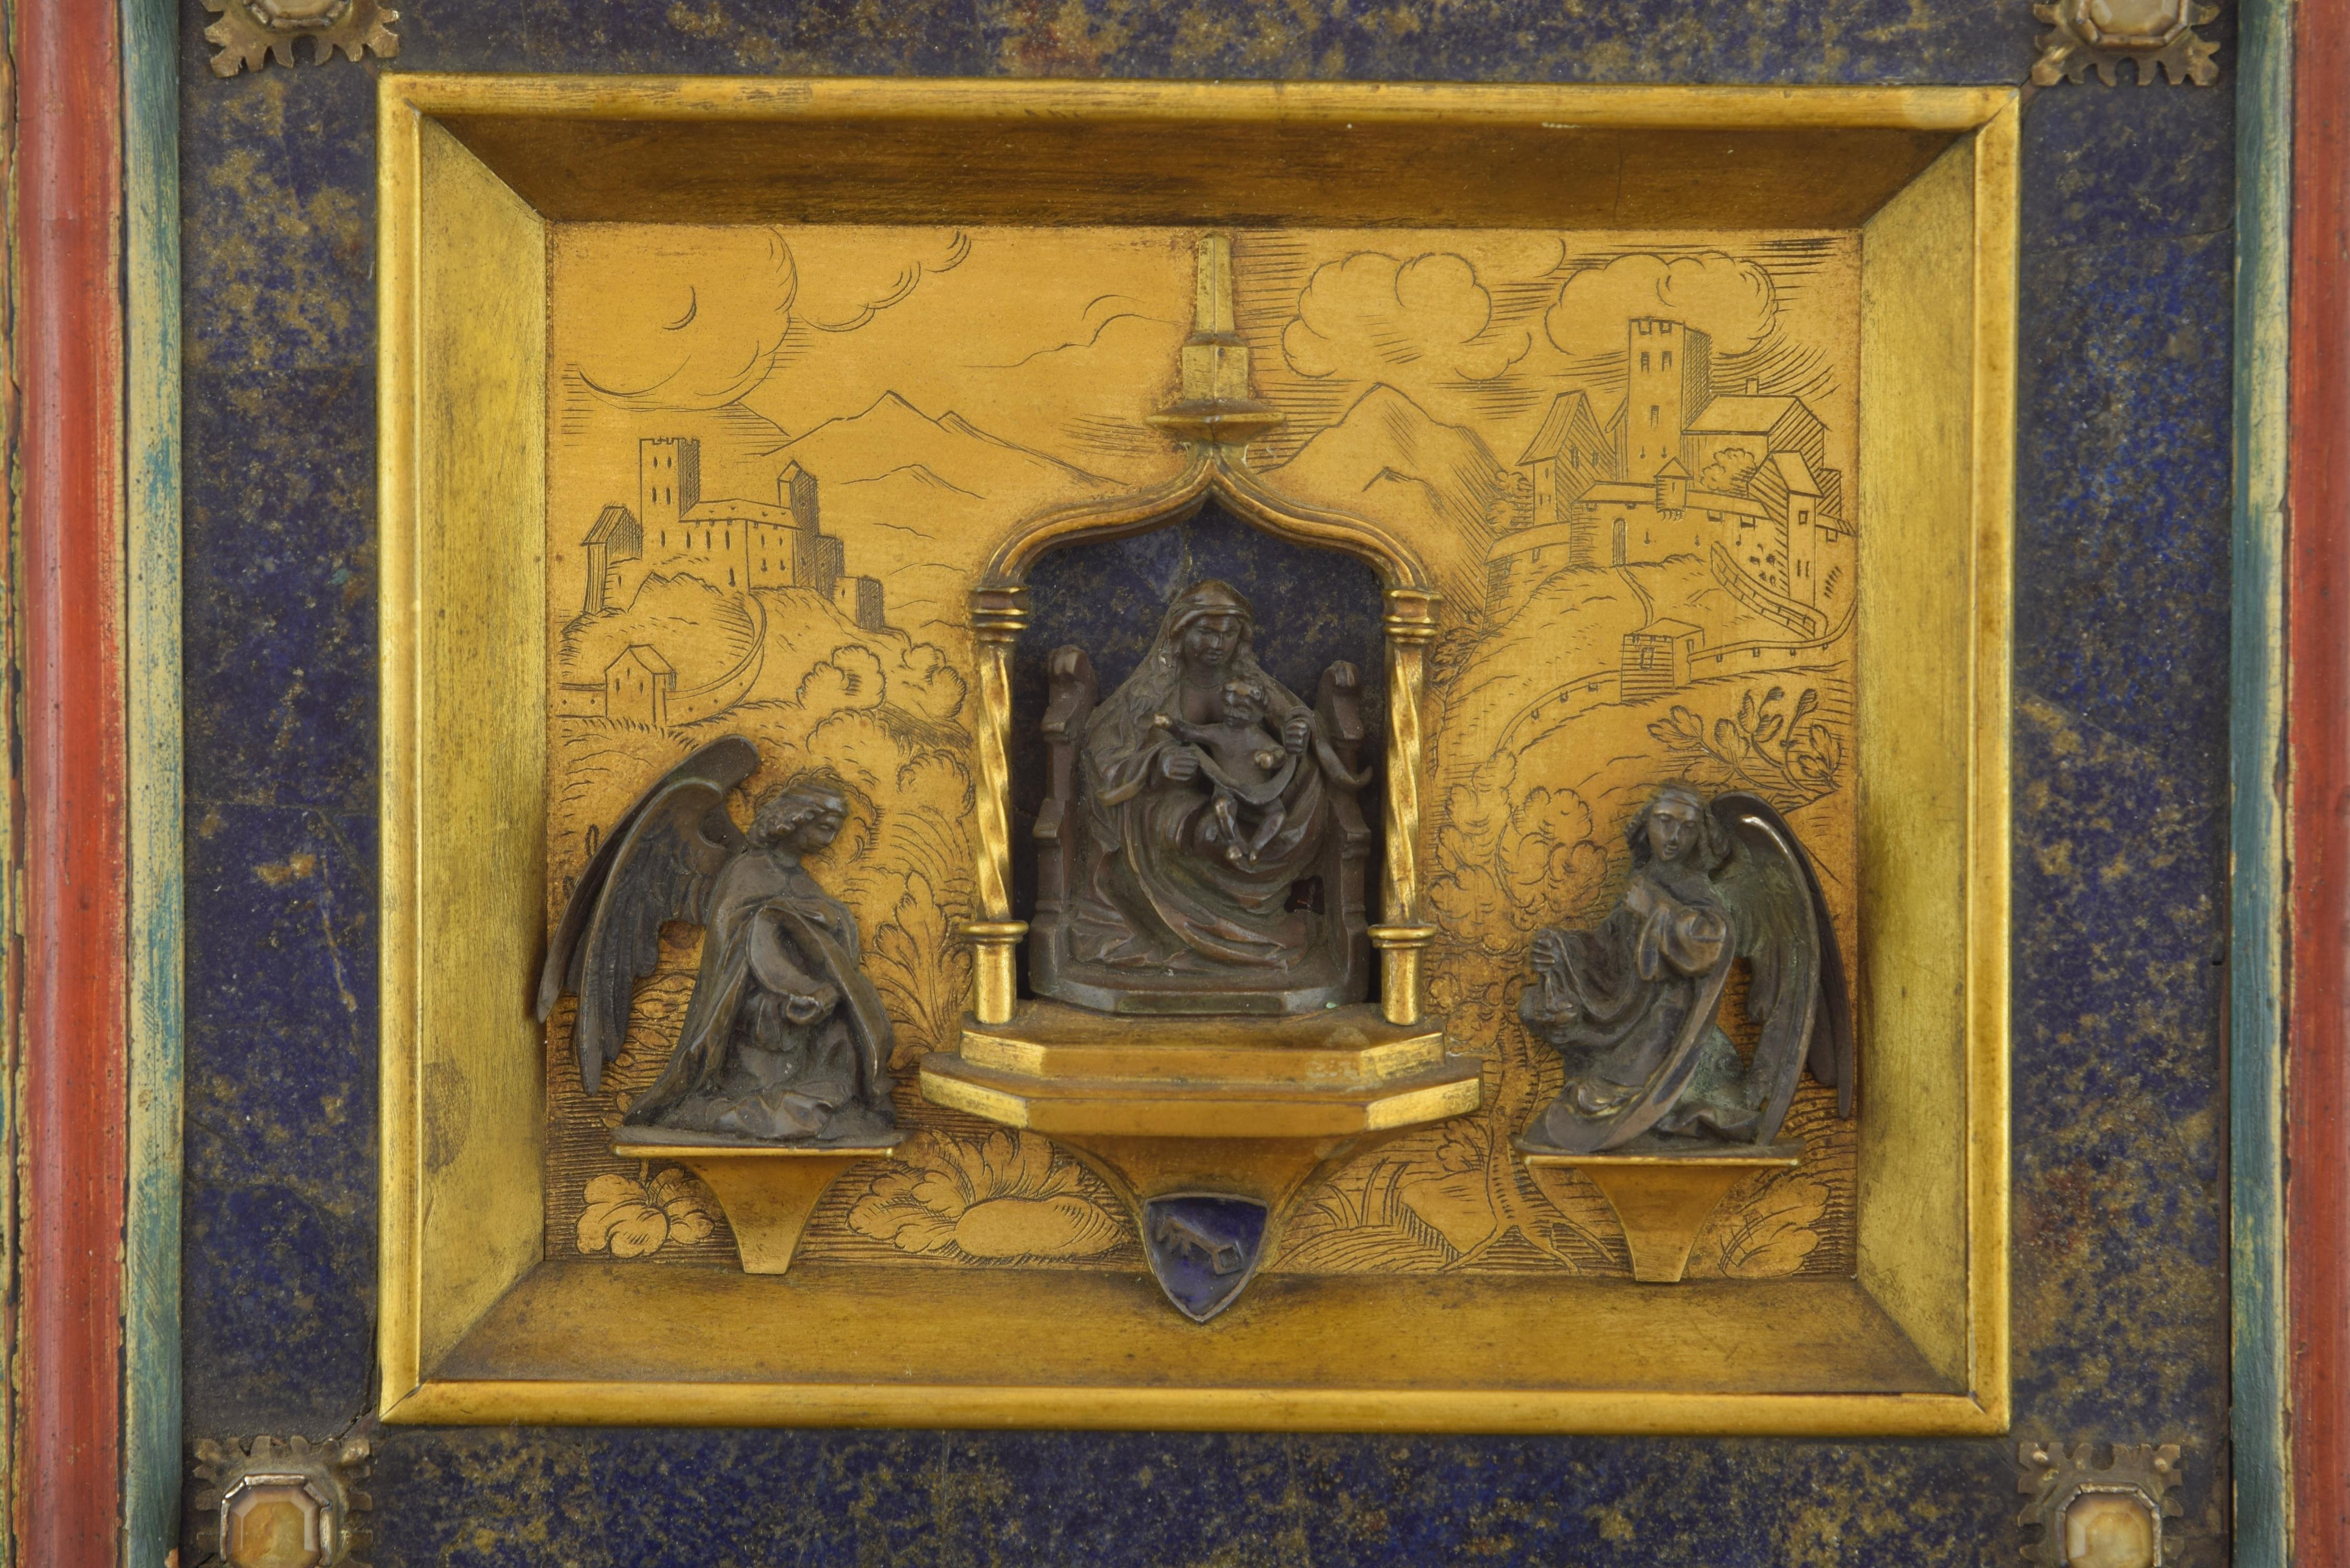 Bronze dans sa couleur et or, lapis-lazuli, cristal de roche, émail.
Au centre de l'œuvre est présentée, trônant, la figure de Marie, avec un manteau (cheminée) sur les épaules et les cheveux et tenant sur ses genoux l'enfant, qui semble s'adresser